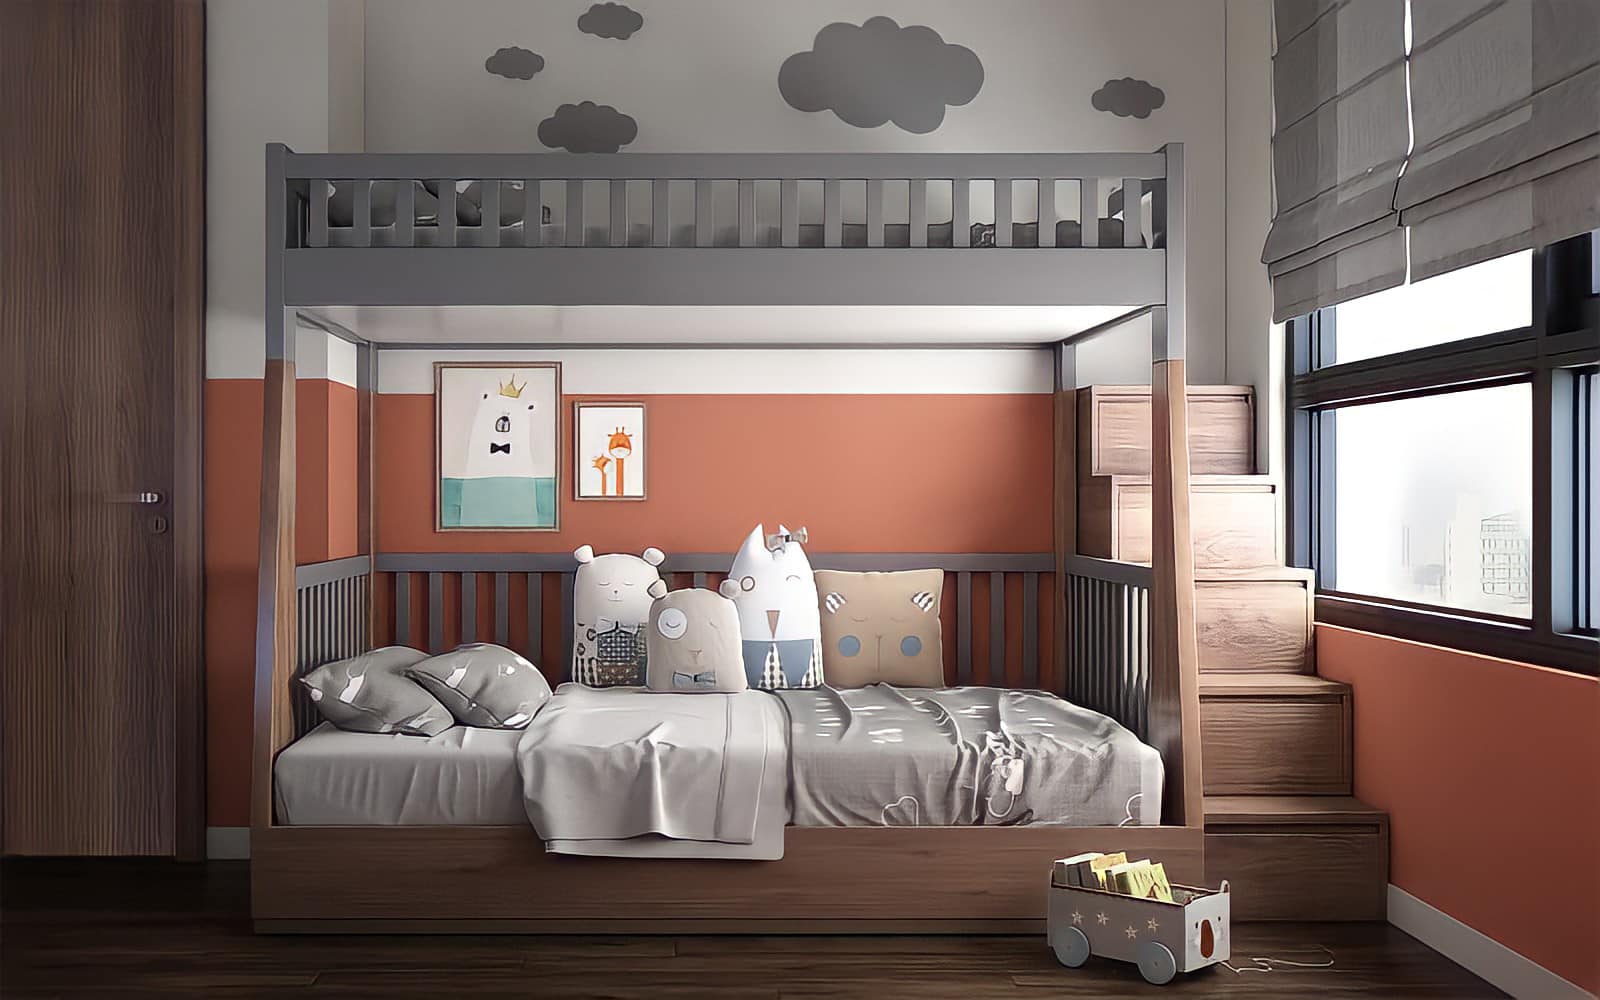 Ba mẹ chỉ nên sử dụng giường hai tầng khi bé có sức khỏe và thể chất tốt 